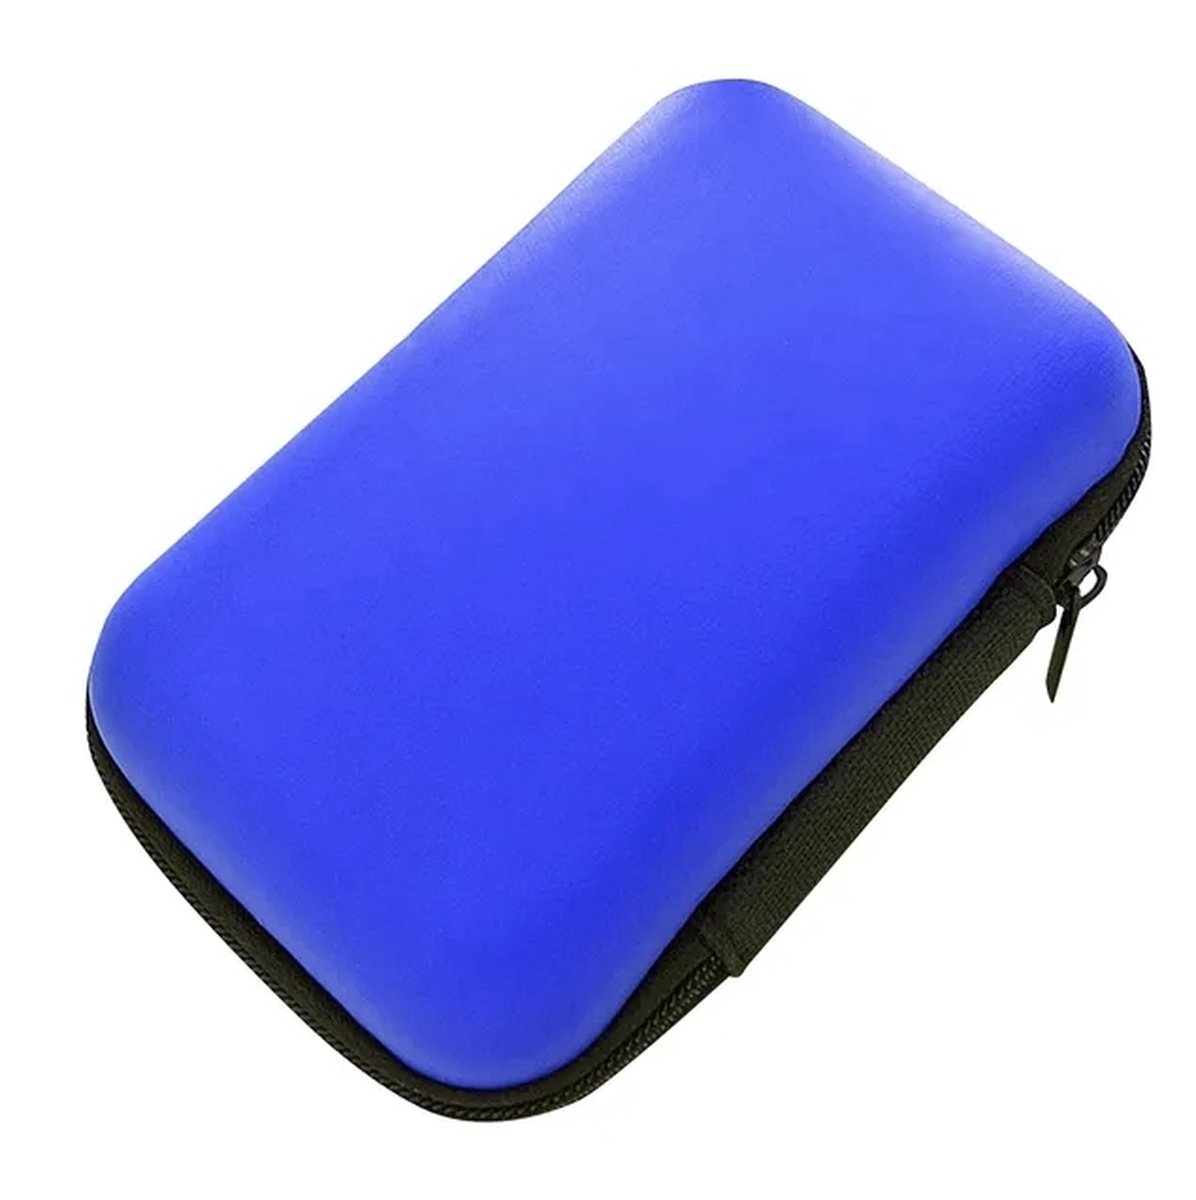 Opberg hoesje - Hard Case - Etui - Organizer - Sleutels - Oordopjes - Laadkabels - USB - Geld - Opbergen - Donker blauw